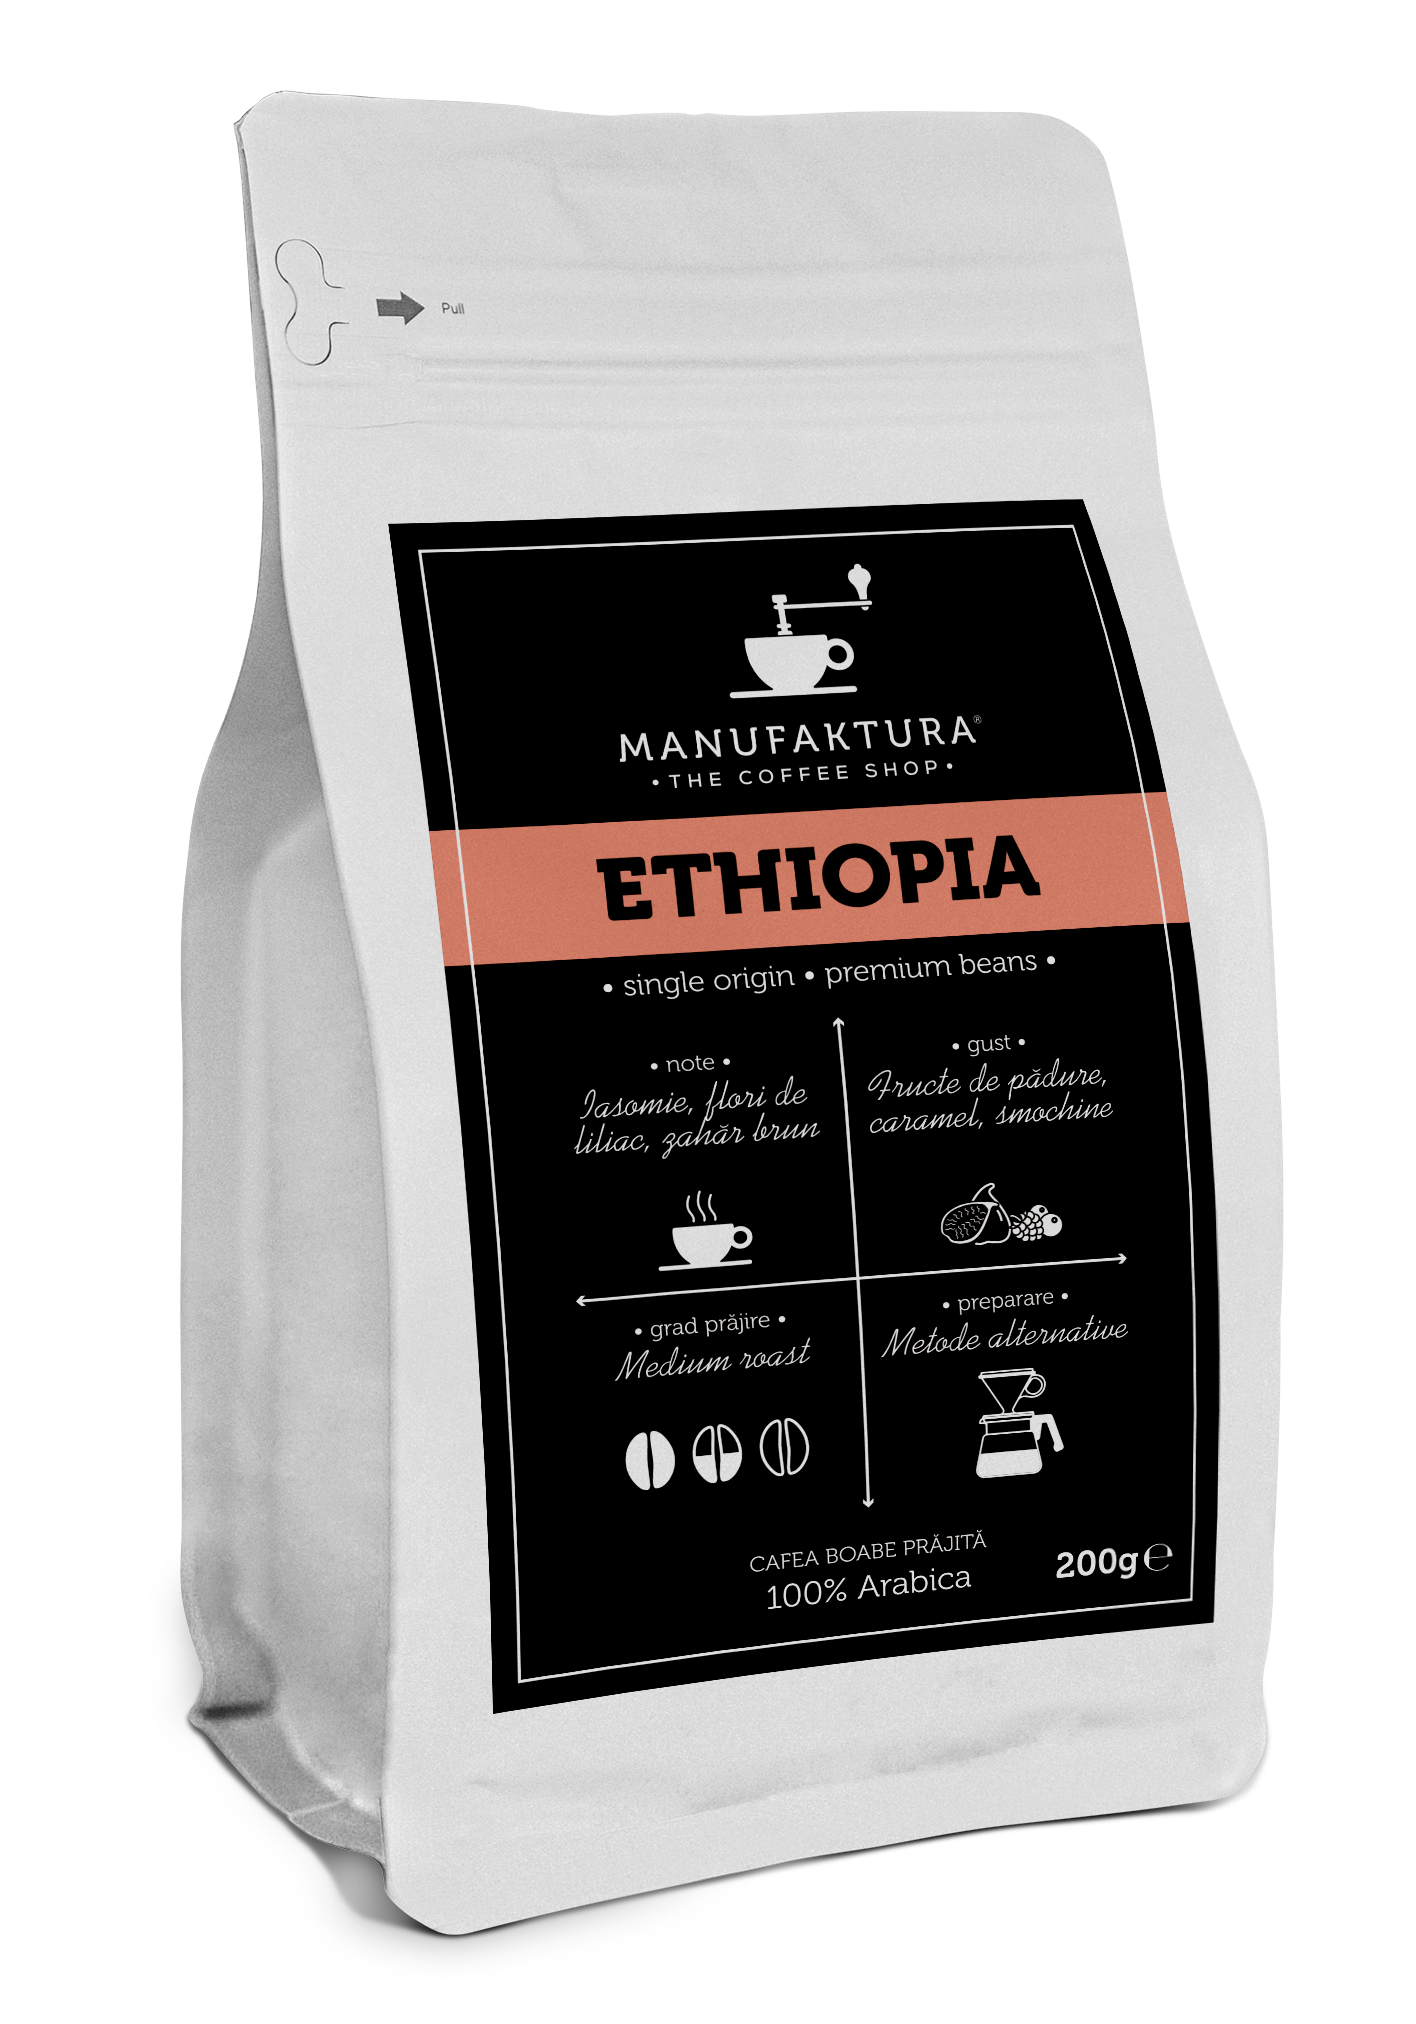  Cafea boabe - Ethiopia | Manufaktura 